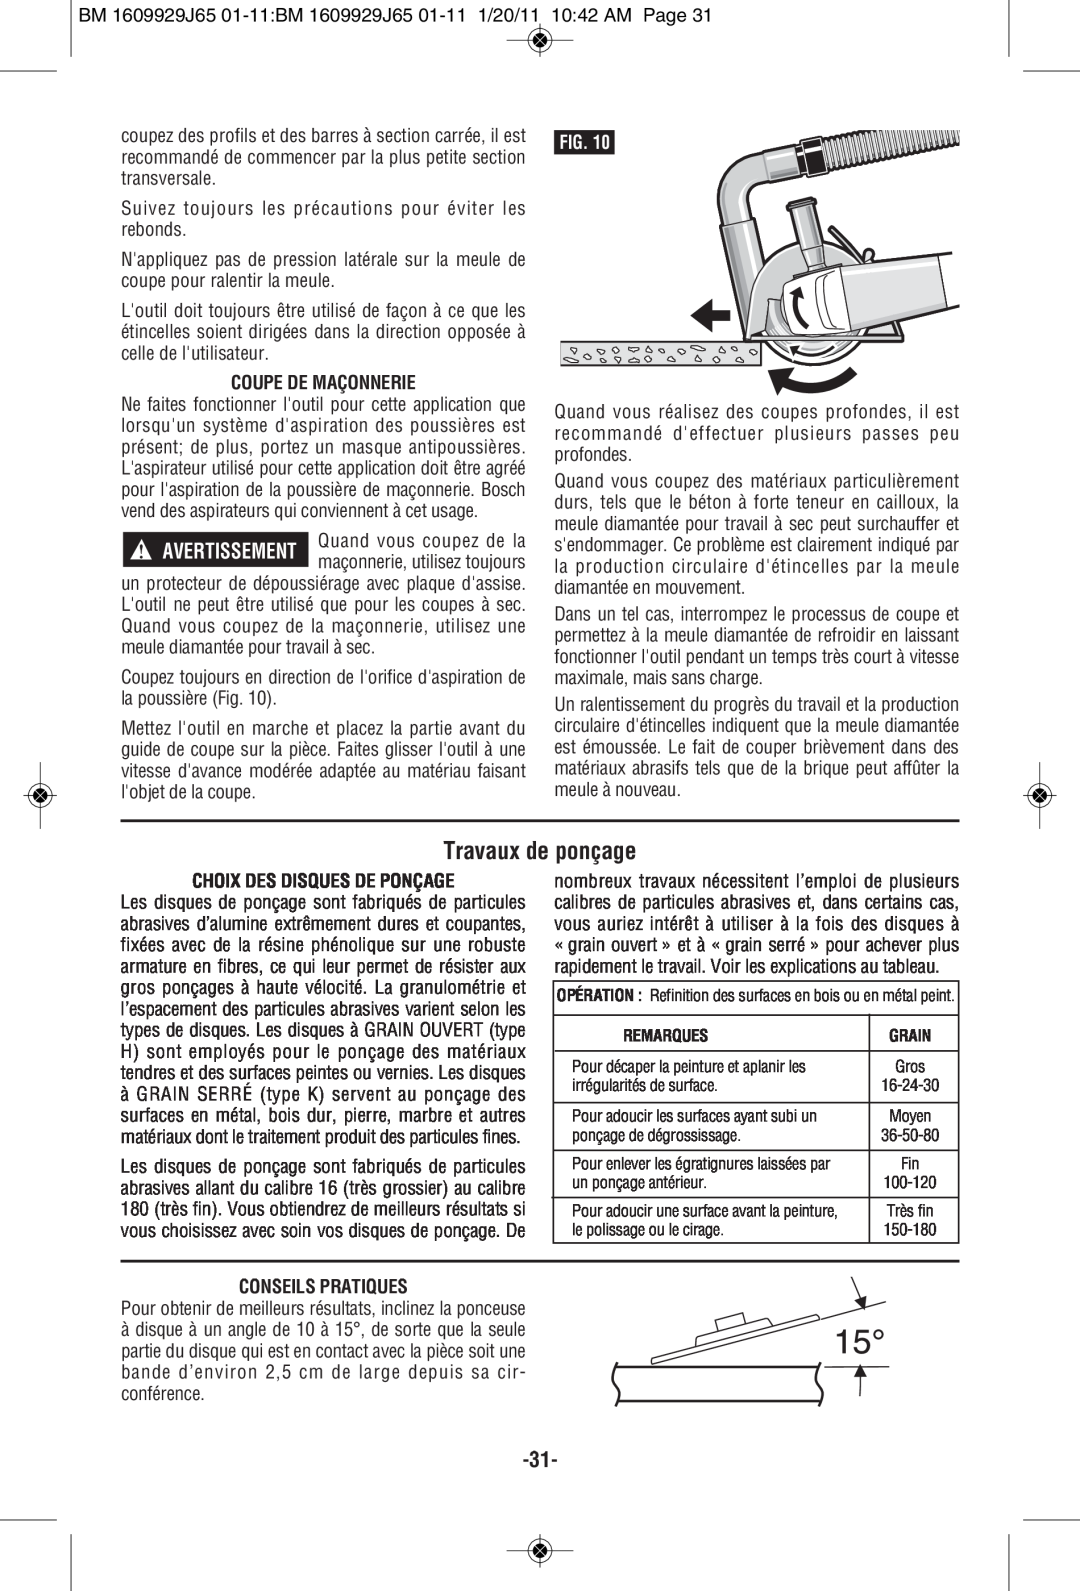 Bosch Power Tools 1810PSD Travaux de ponçage, Coupe De Maçonnerie, Choix Des Disques De Ponçage, Conseils Pratiques, Grain 